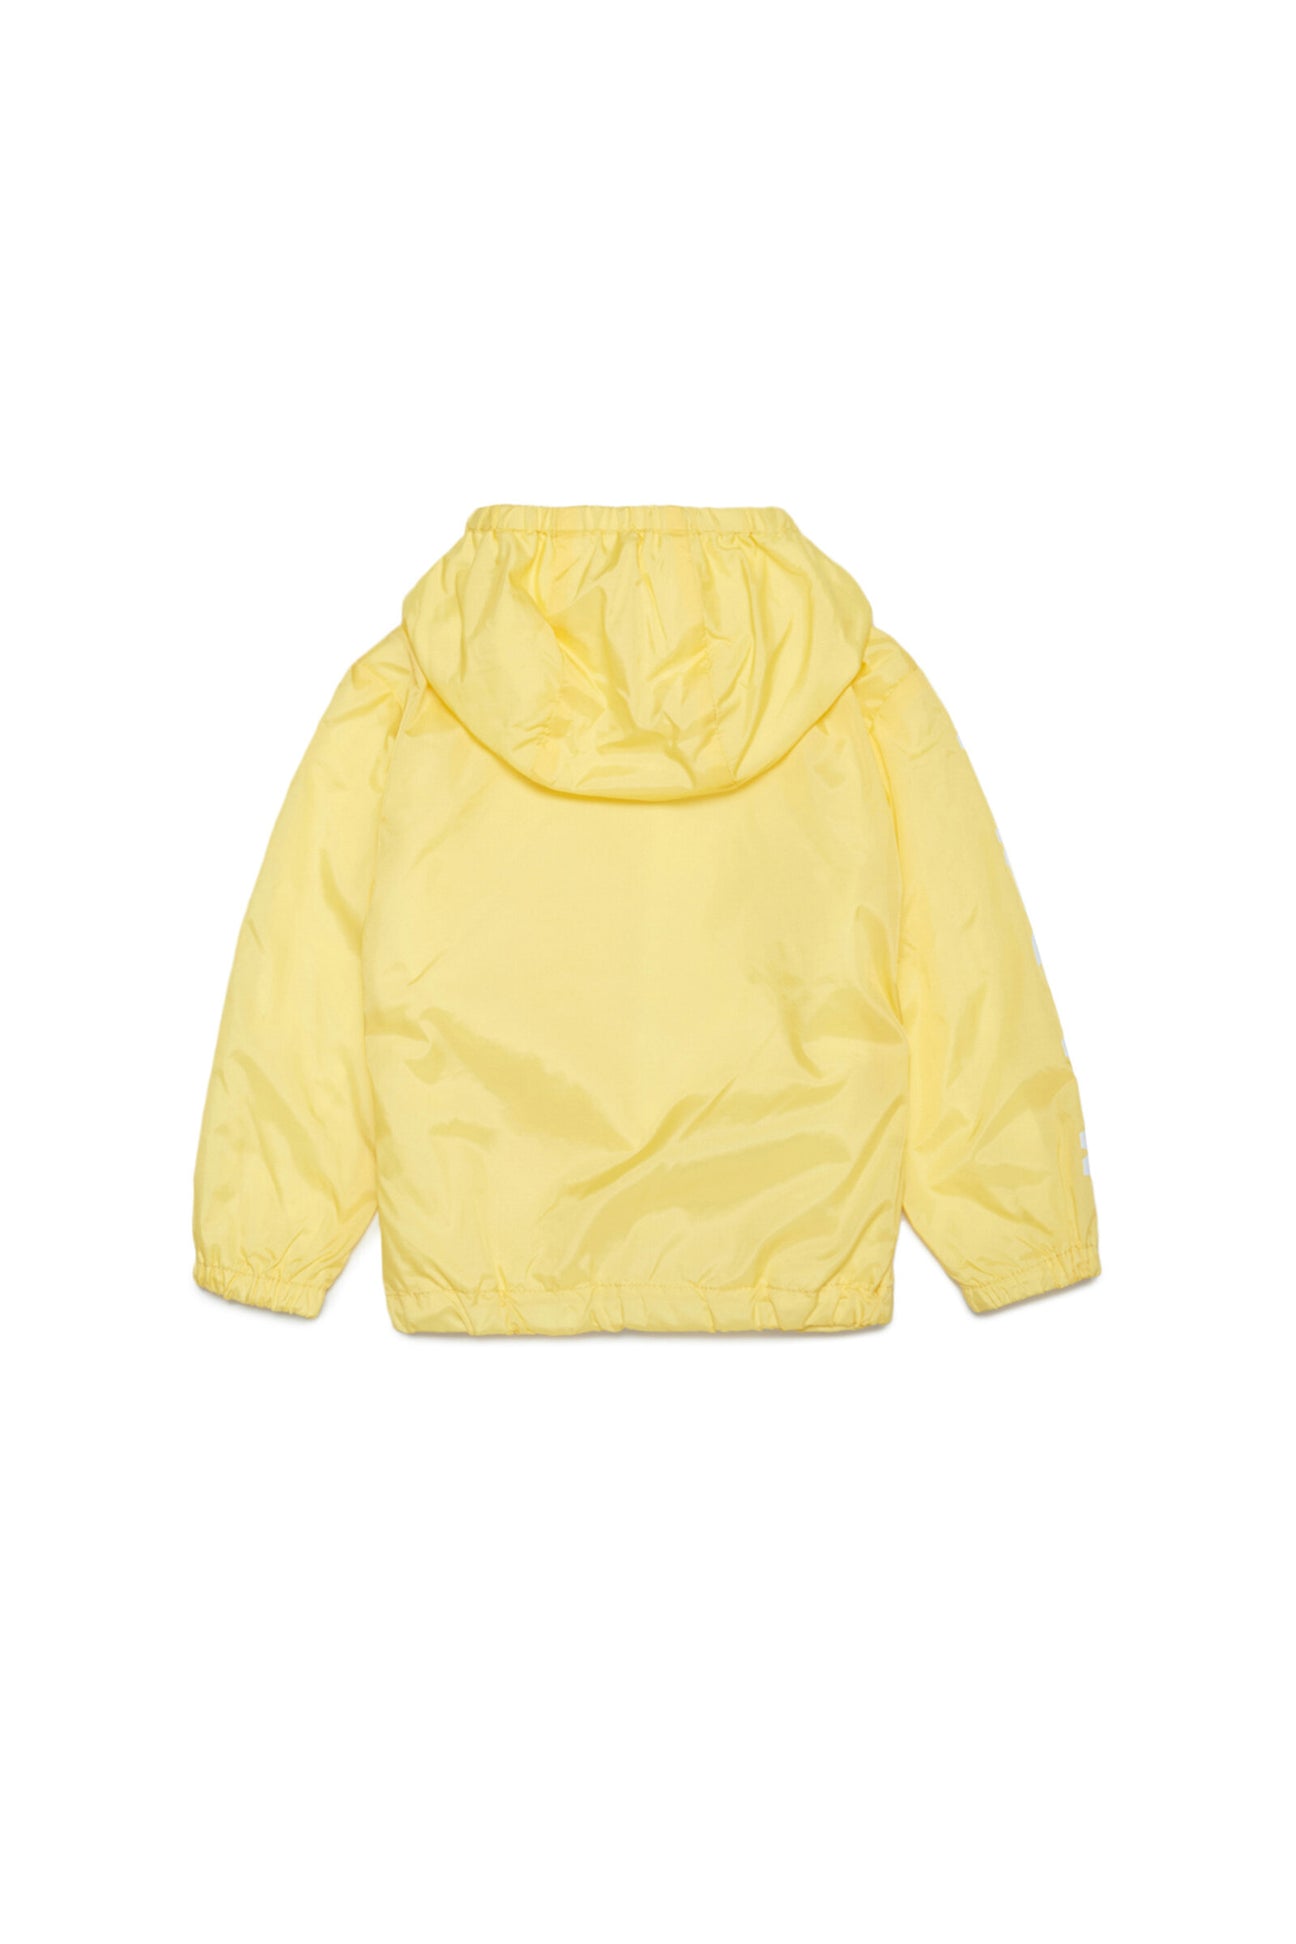 Yellow waterproof lined jacket with hood, zip and logo on the sleeves Yellow waterproof lined jacket with hood, zip and logo on the sleeves